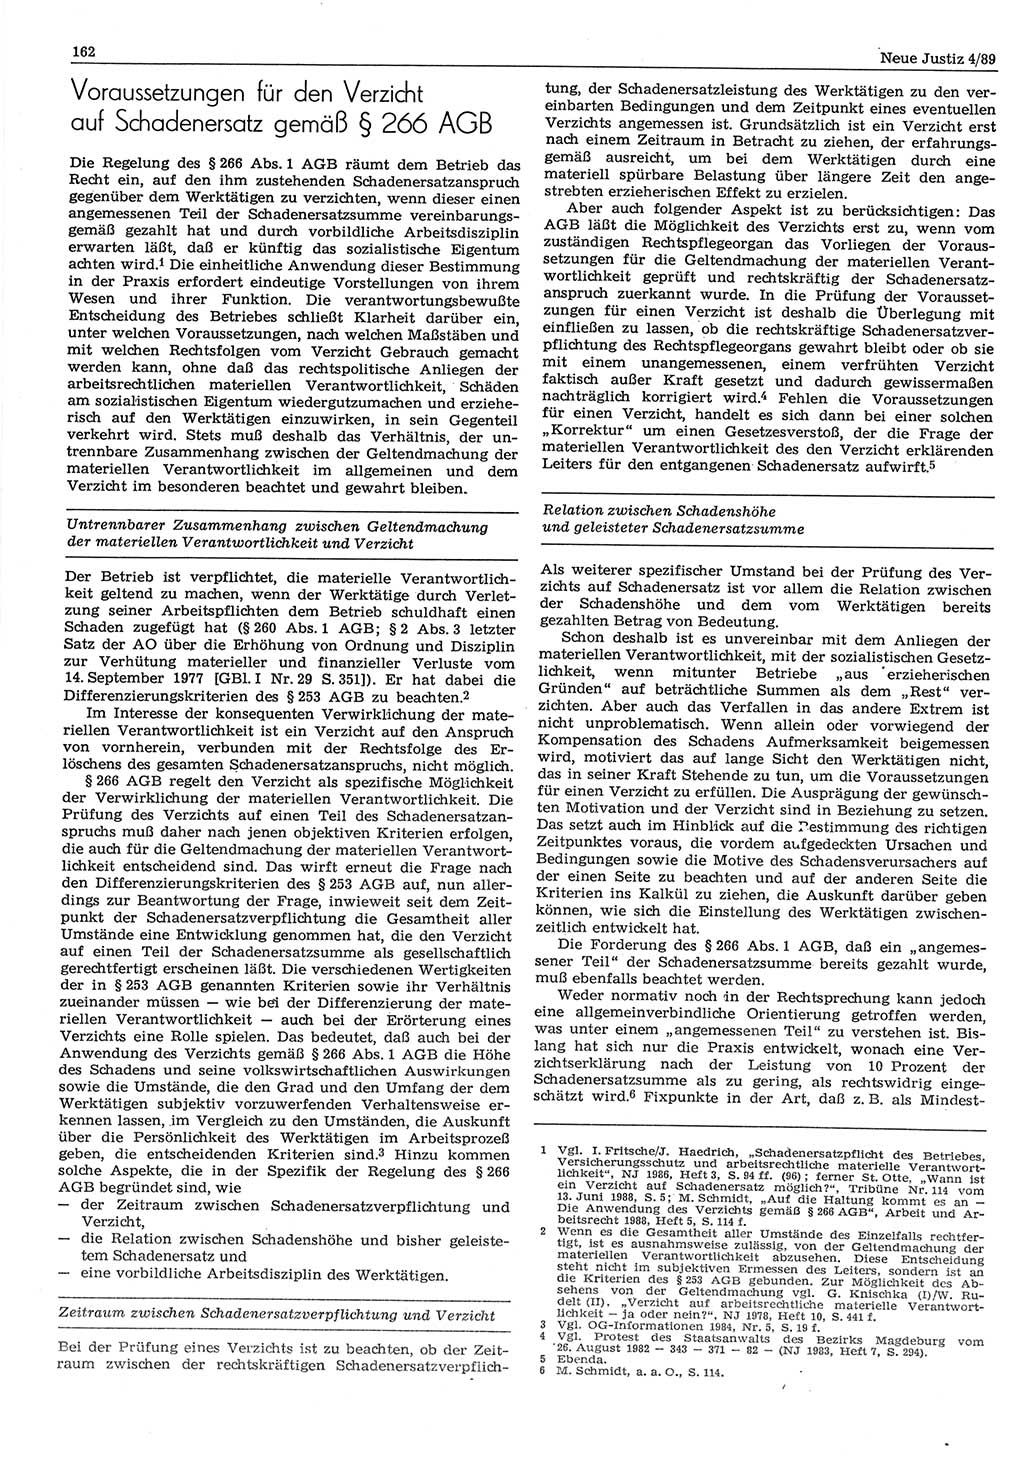 Neue Justiz (NJ), Zeitschrift für sozialistisches Recht und Gesetzlichkeit [Deutsche Demokratische Republik (DDR)], 43. Jahrgang 1989, Seite 162 (NJ DDR 1989, S. 162)